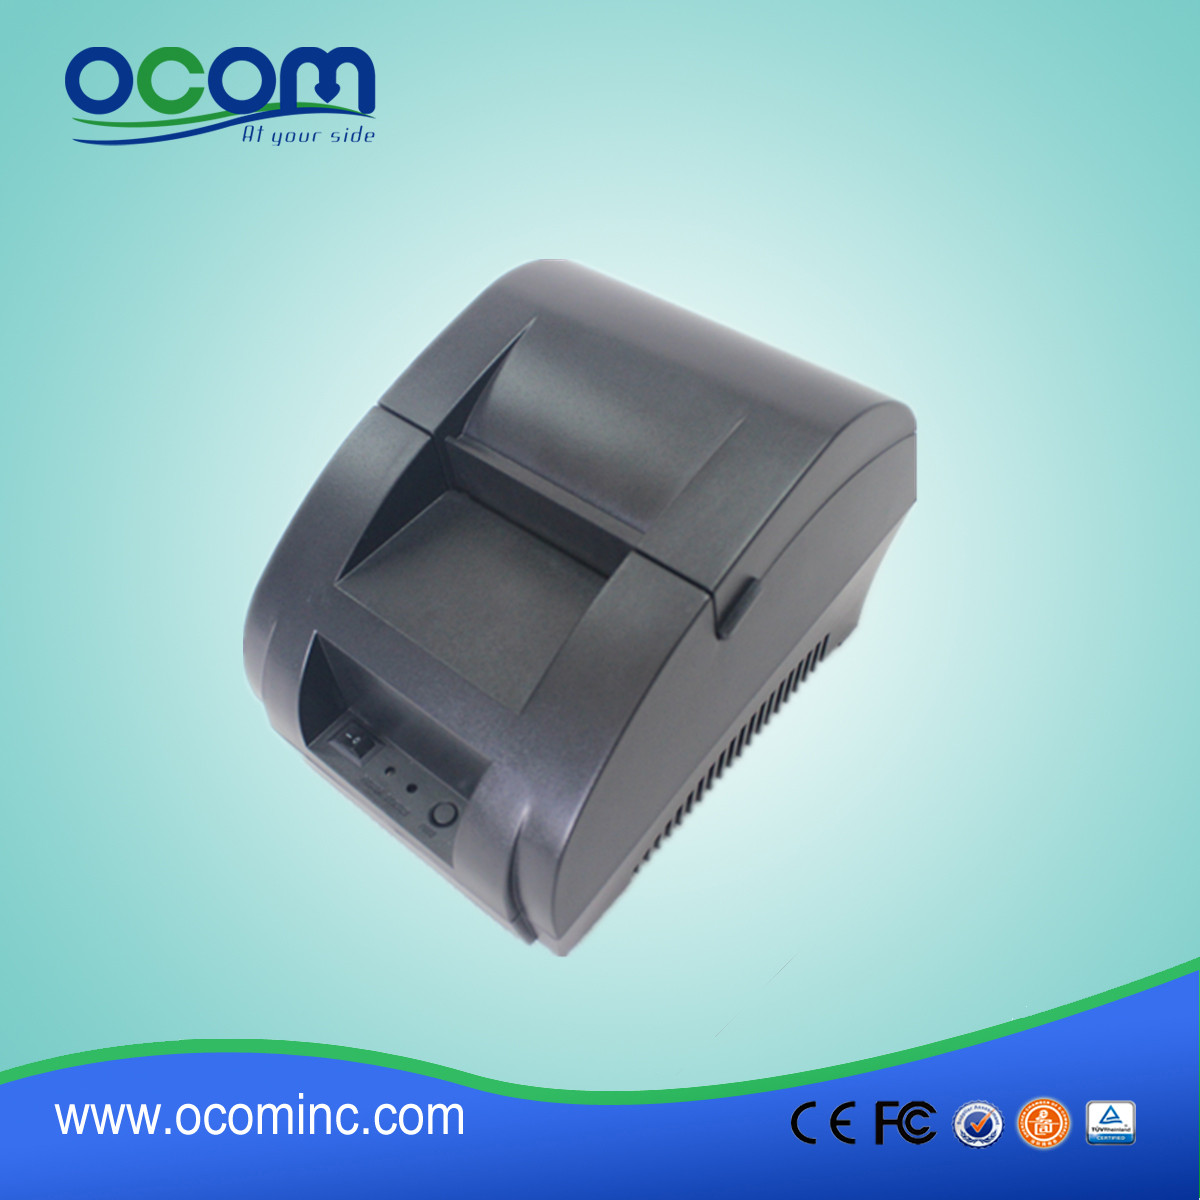 Imprimante de reçus thermiques de 58 mm avec adaptateur secteur intégré OCPP-58Z-U